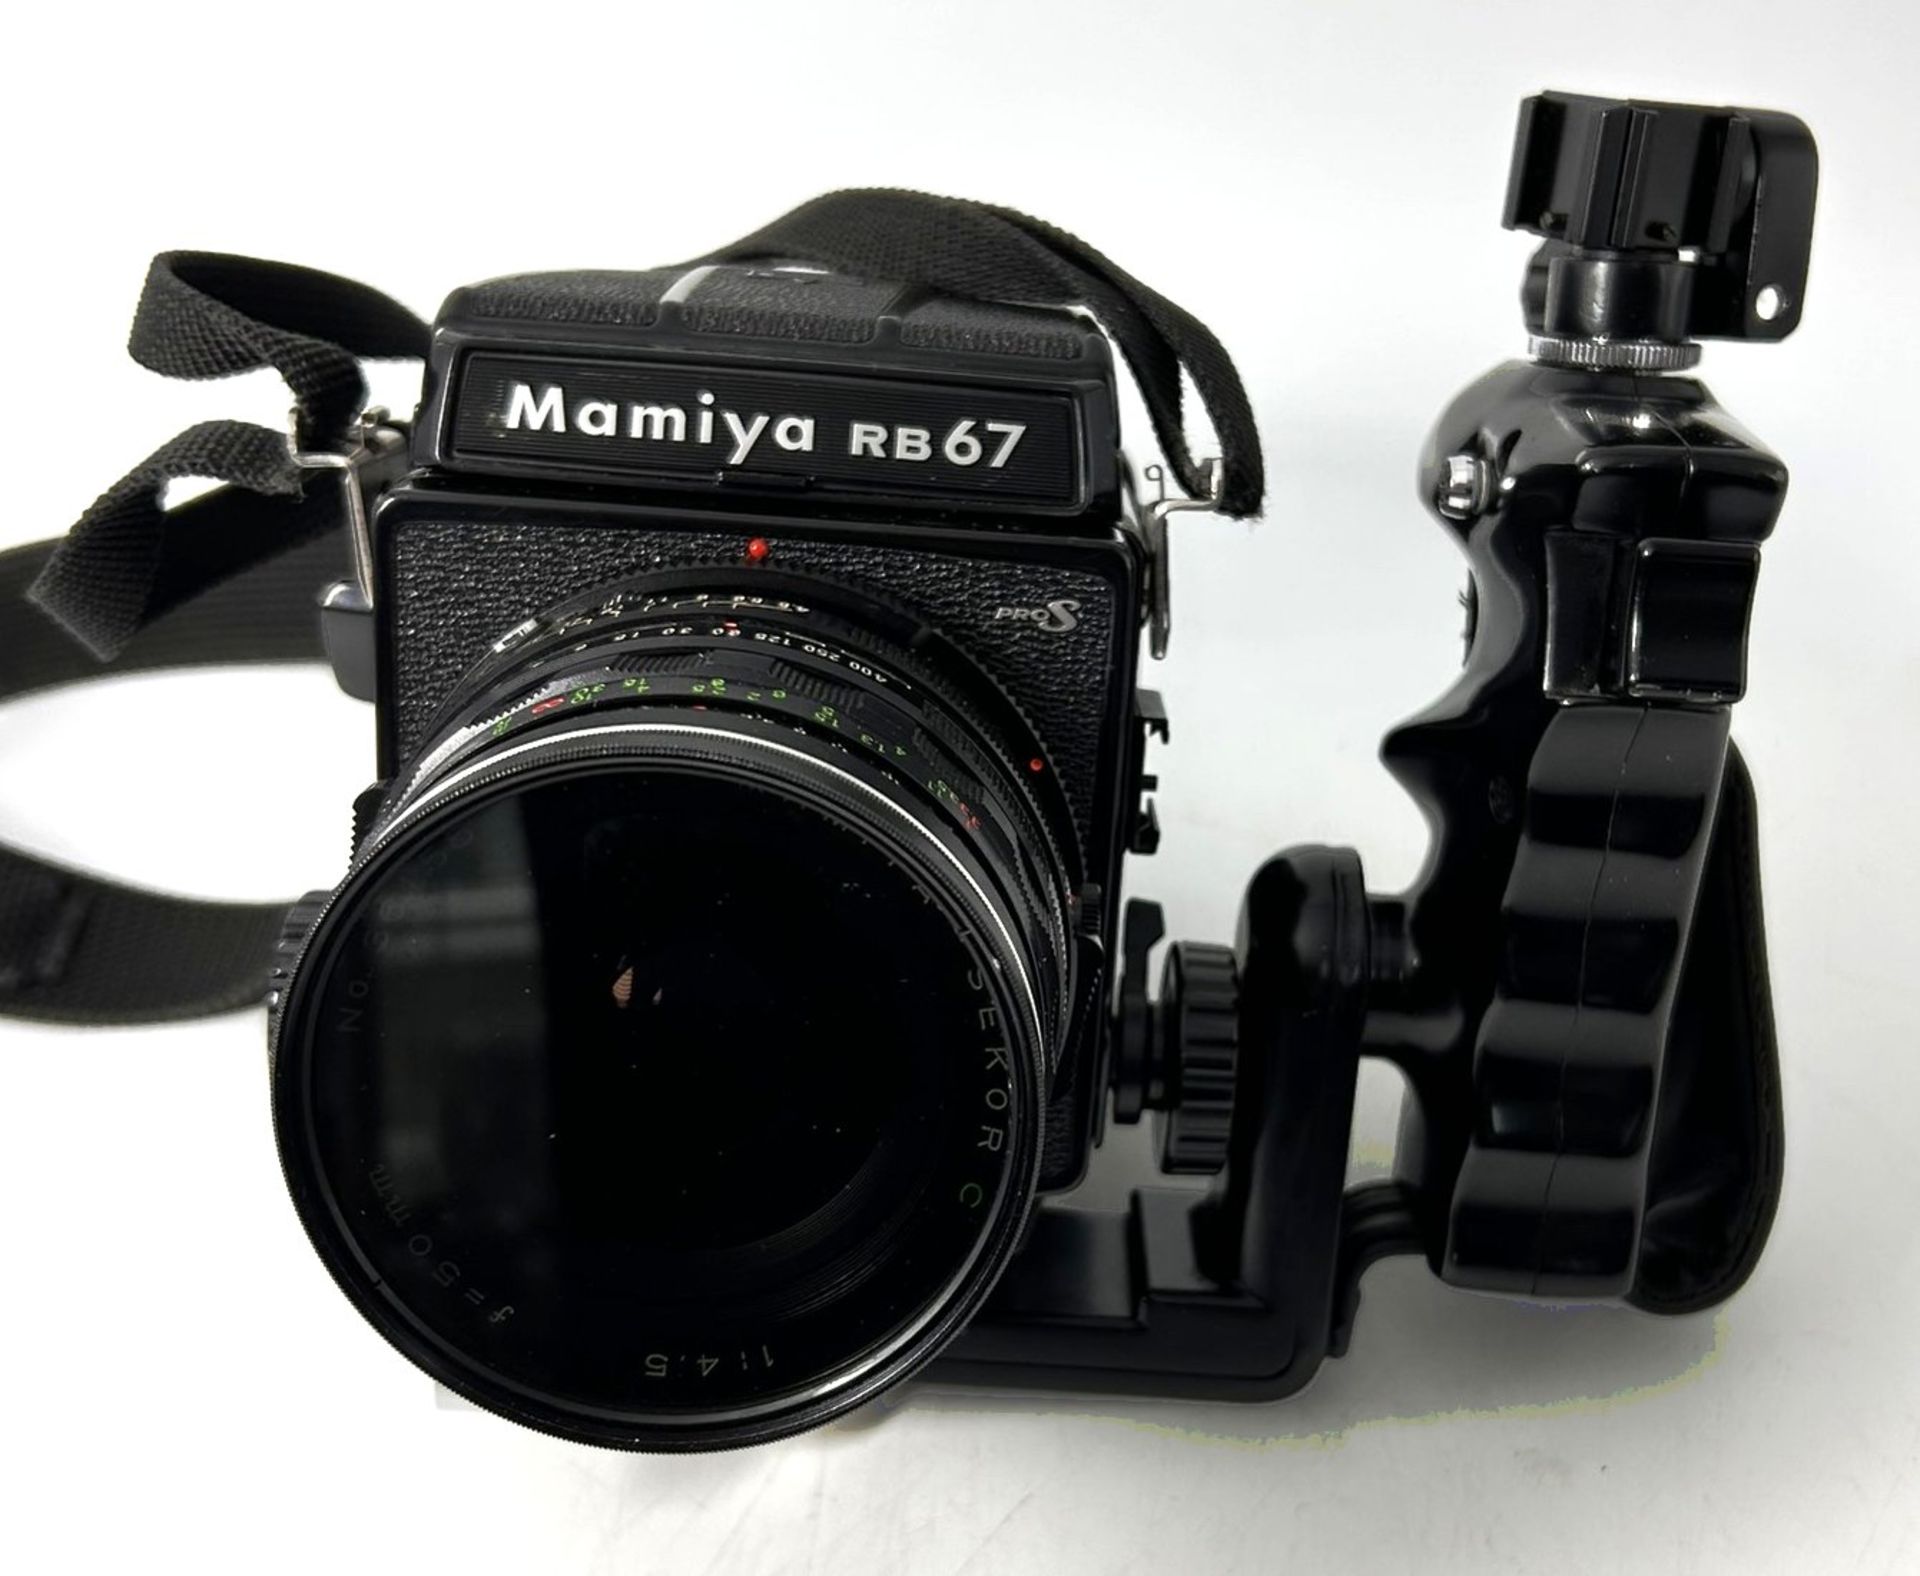 analoge  Profi Kamera "Mamya RB 67 S pro" in Alukoffer,3 Objektive , Wechsel-Filmbehälter und viel 